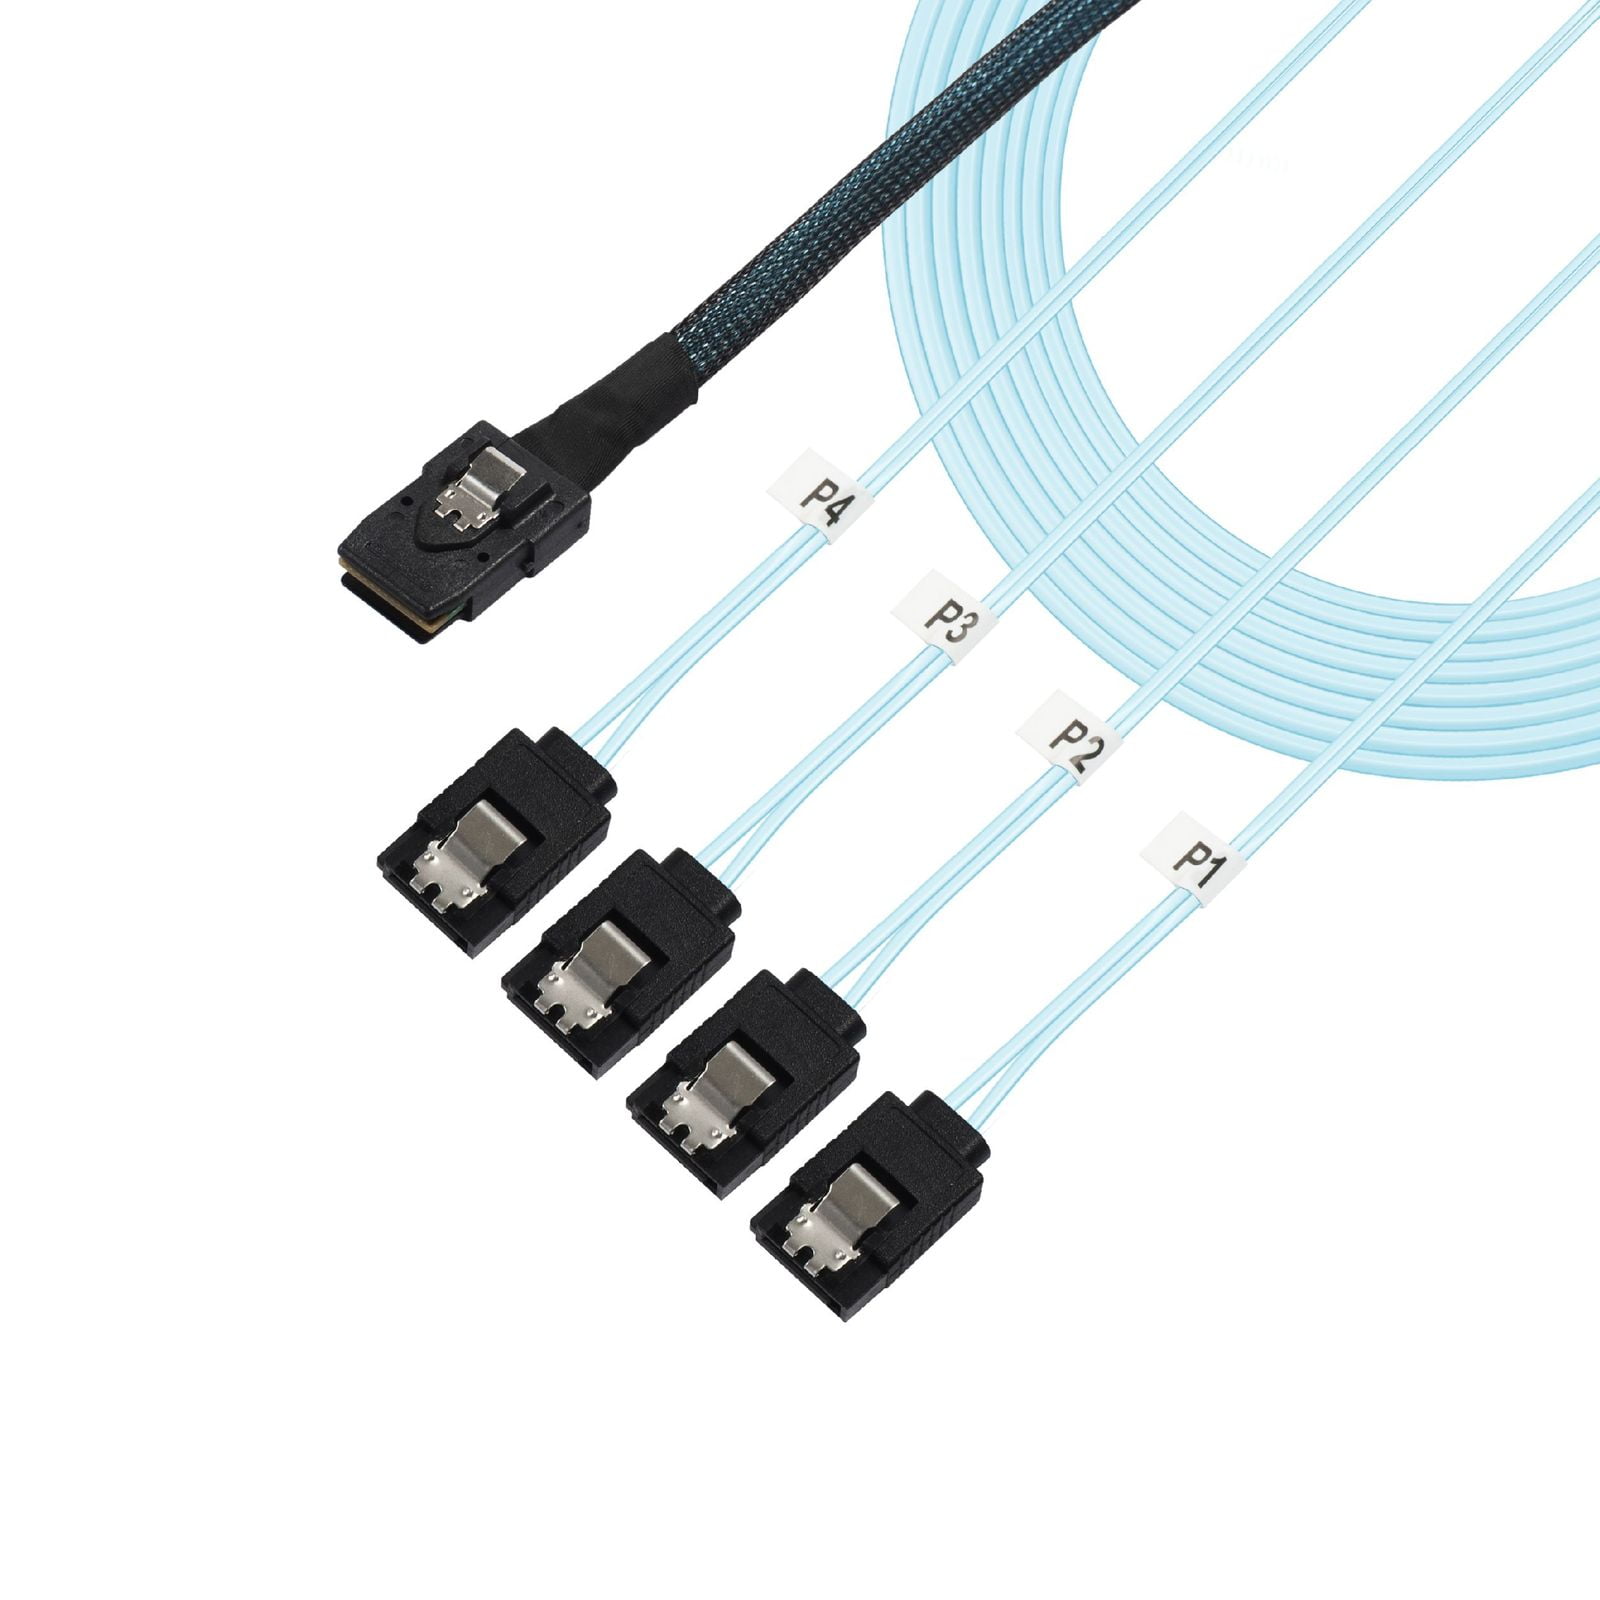 SAS internal cable 4-Lane 36 pin 4i Mini MultiLane M M - 50 cm to 36 pin 4i Mini MultiLane Broadcom LSI